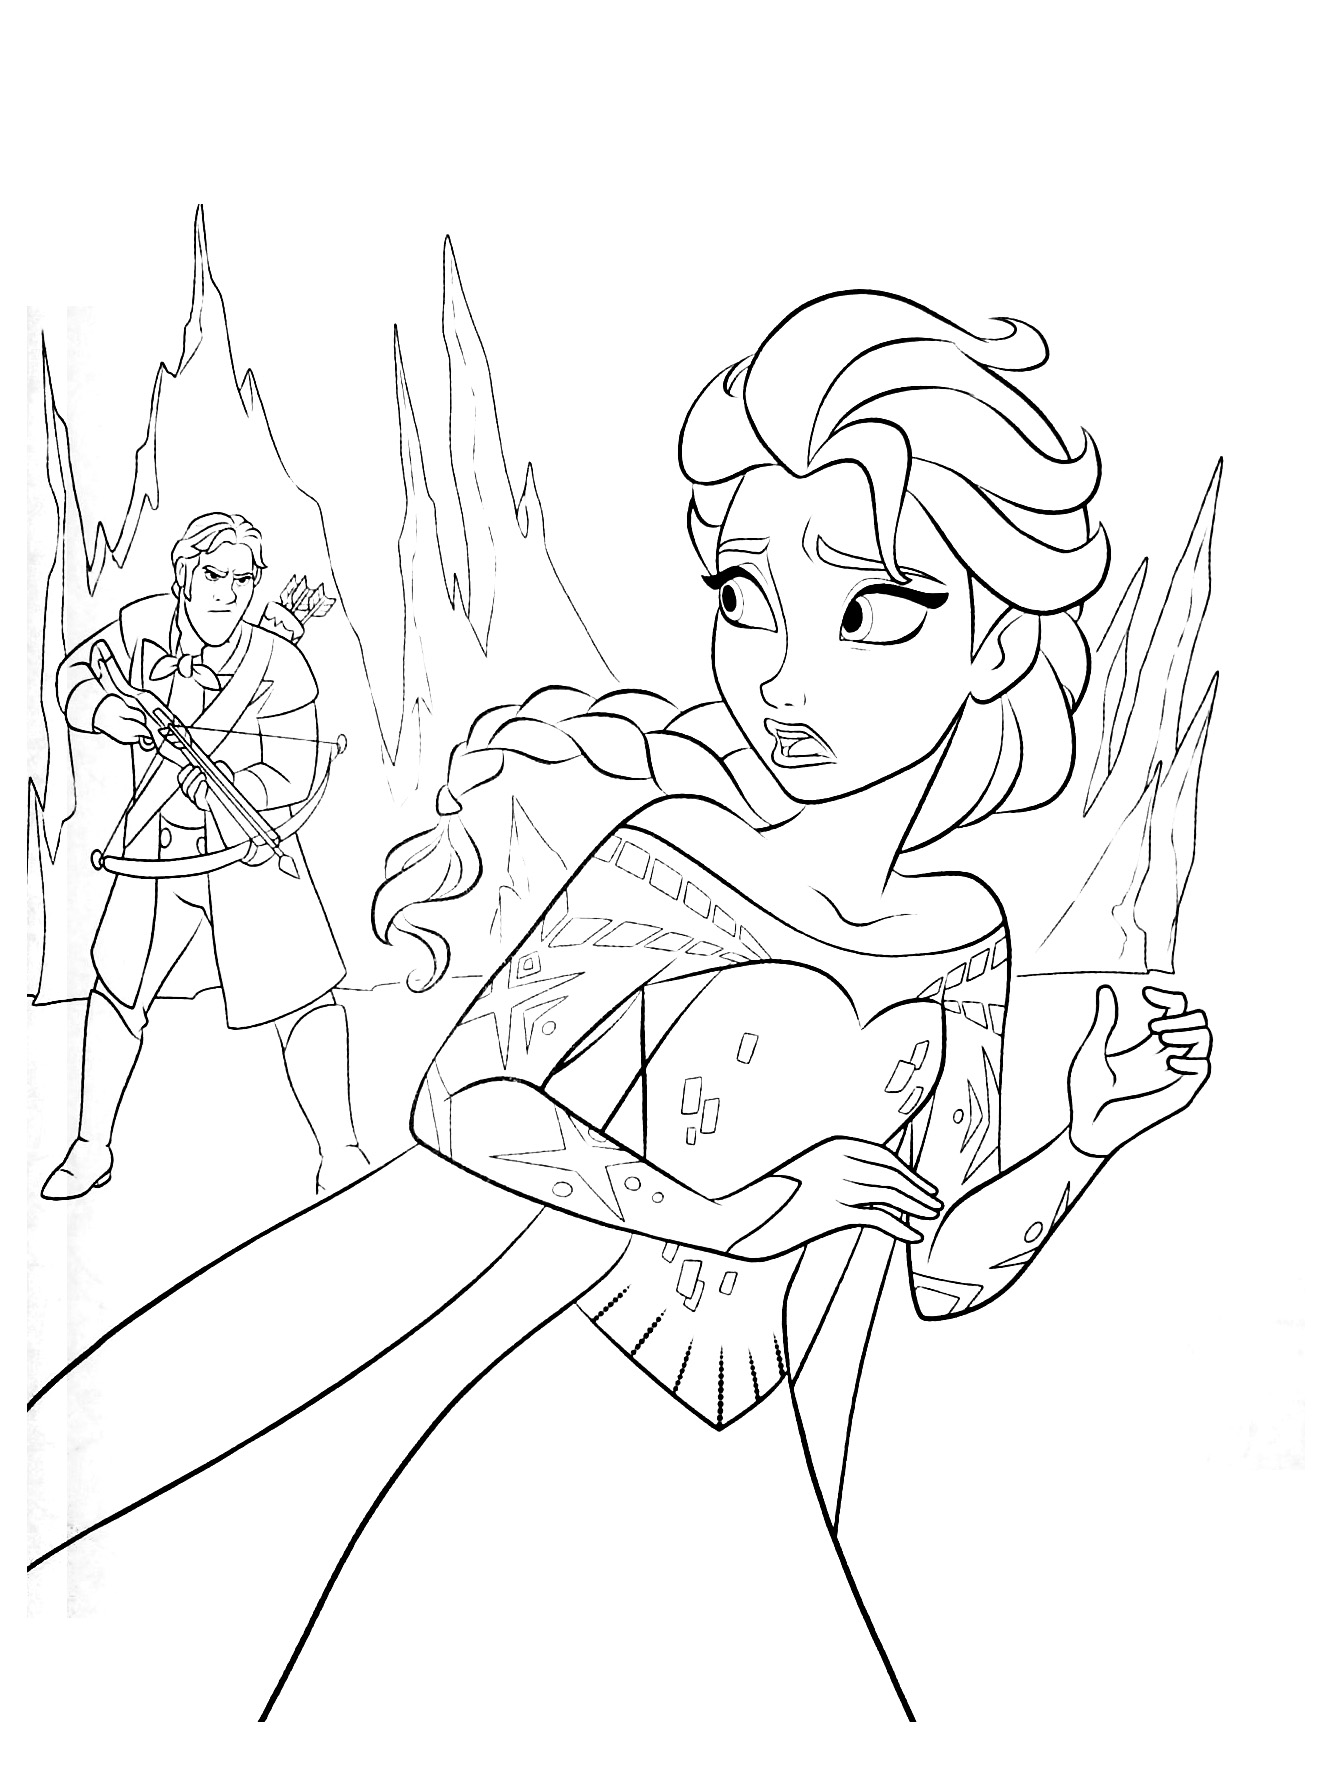 Elsa menacée par le Prince